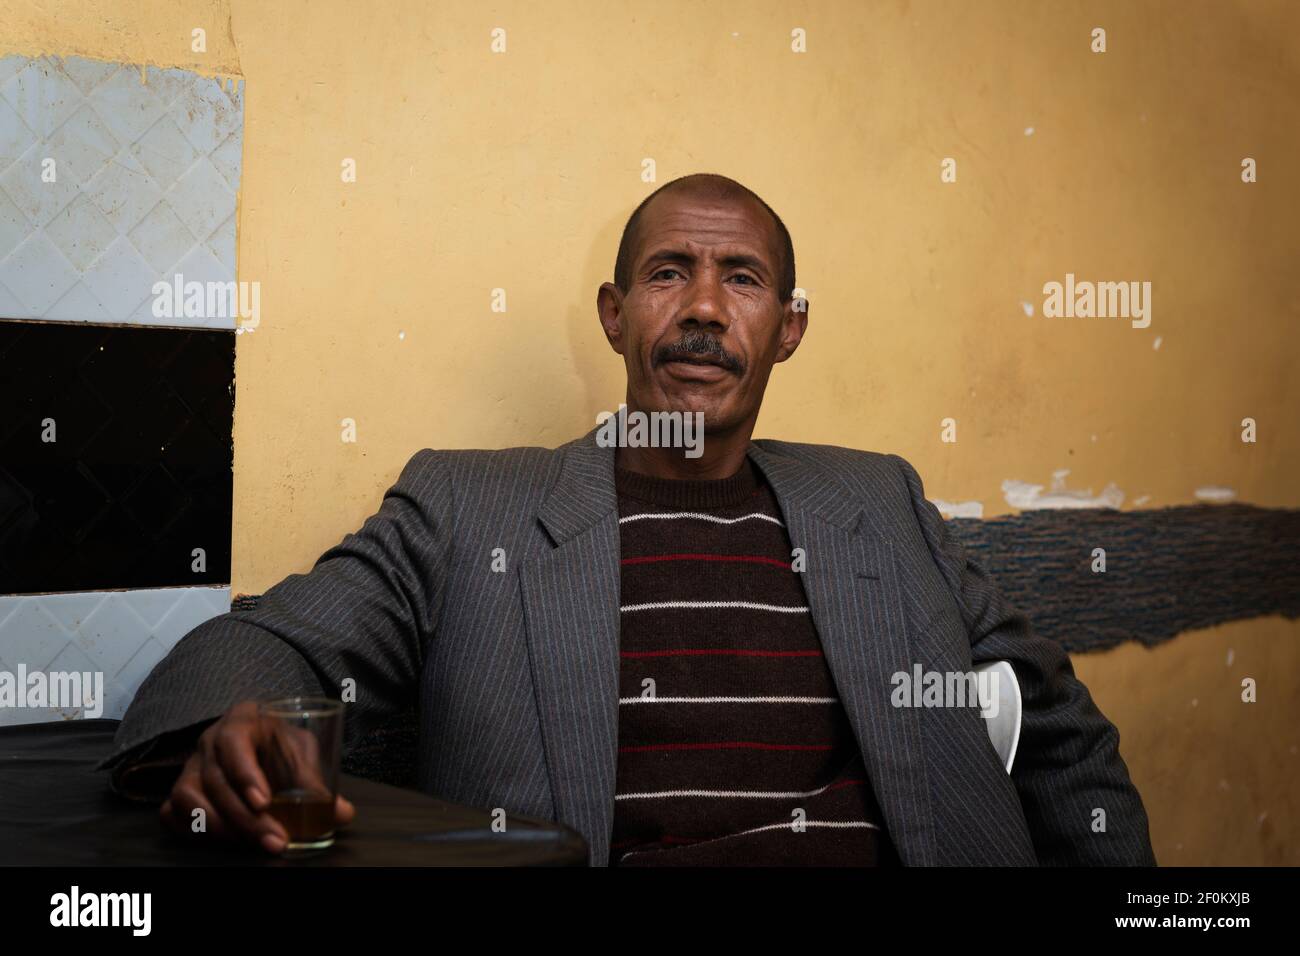 Telouet, Marocco - 14 aprile 2016: Ritratto di un uomo in un bar al villaggio di Telouet, nella regione atlante del Marocco. Foto Stock